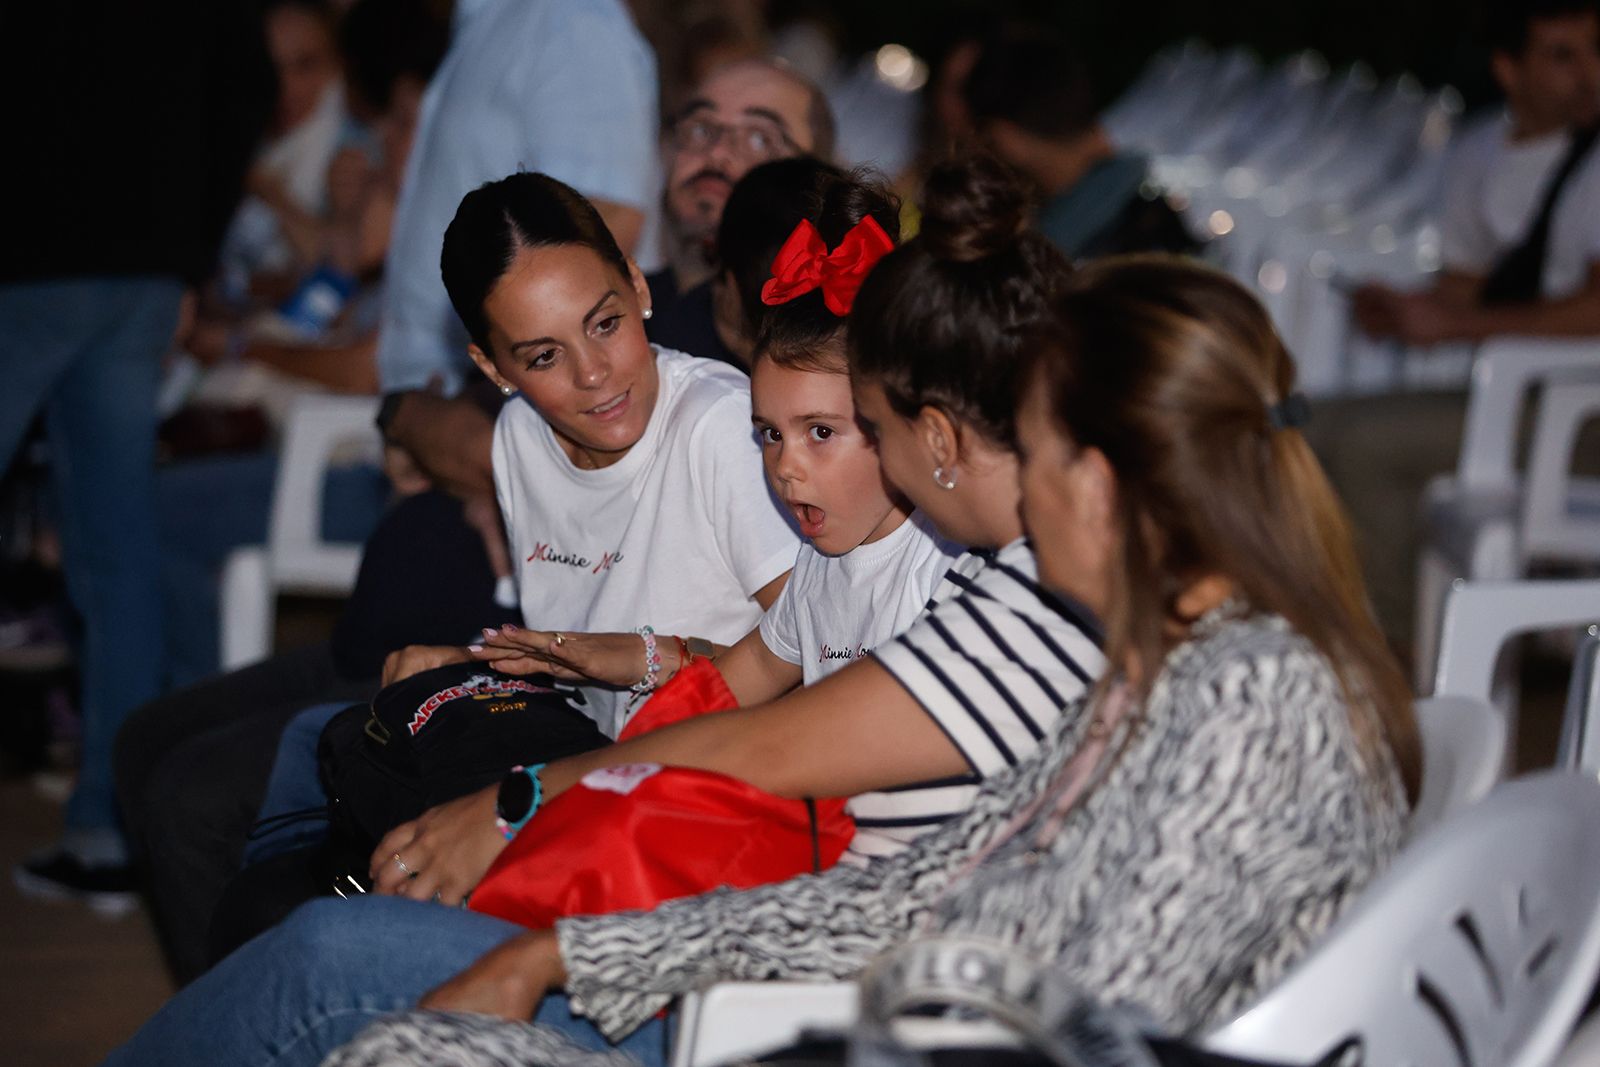 Córdoba arropa la reapertura de los cines de verano